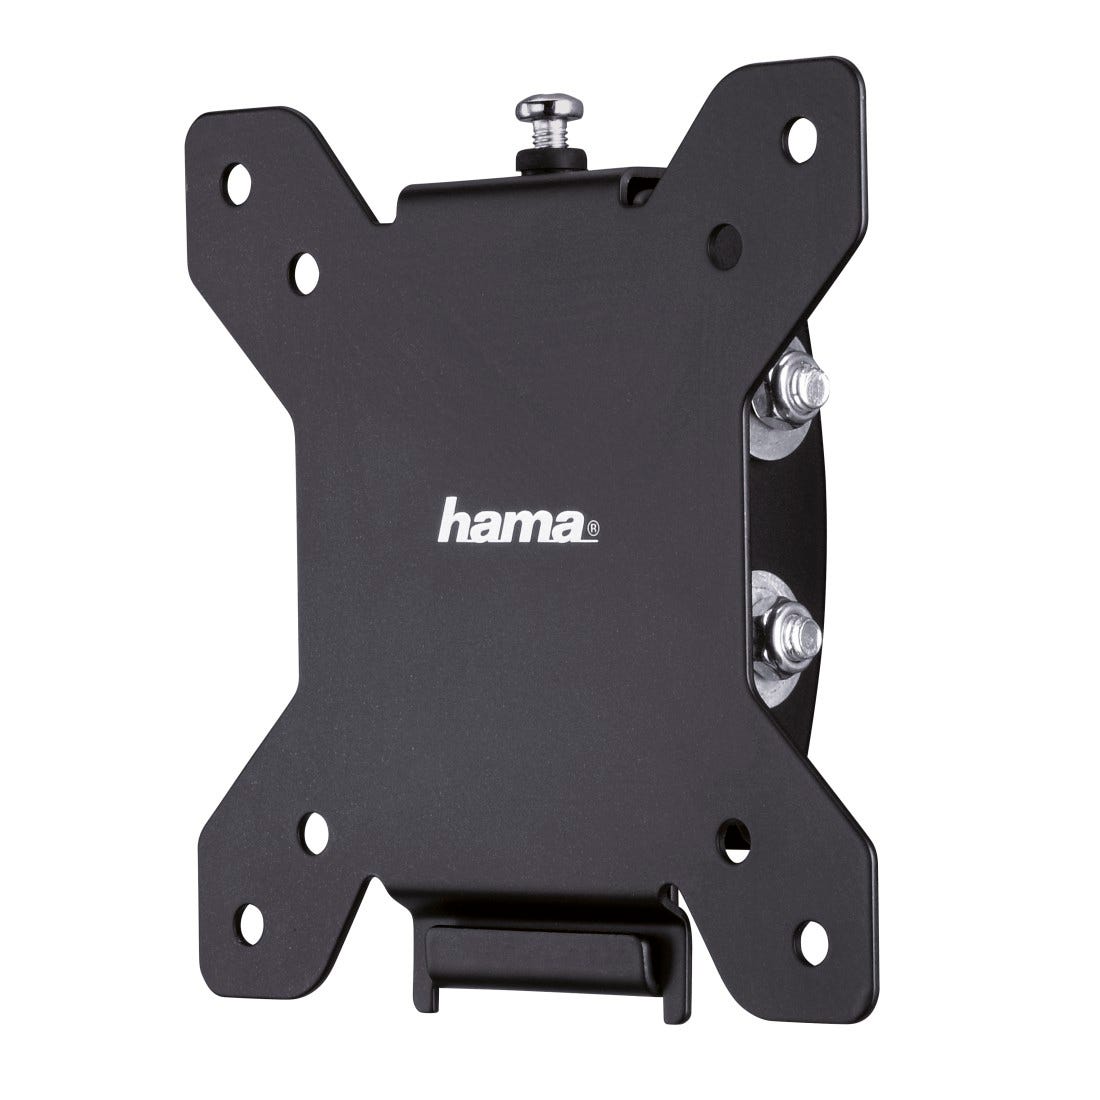 Hama 118662 - Soporte TV VESA 100x100 mm - Hasta 25Kg